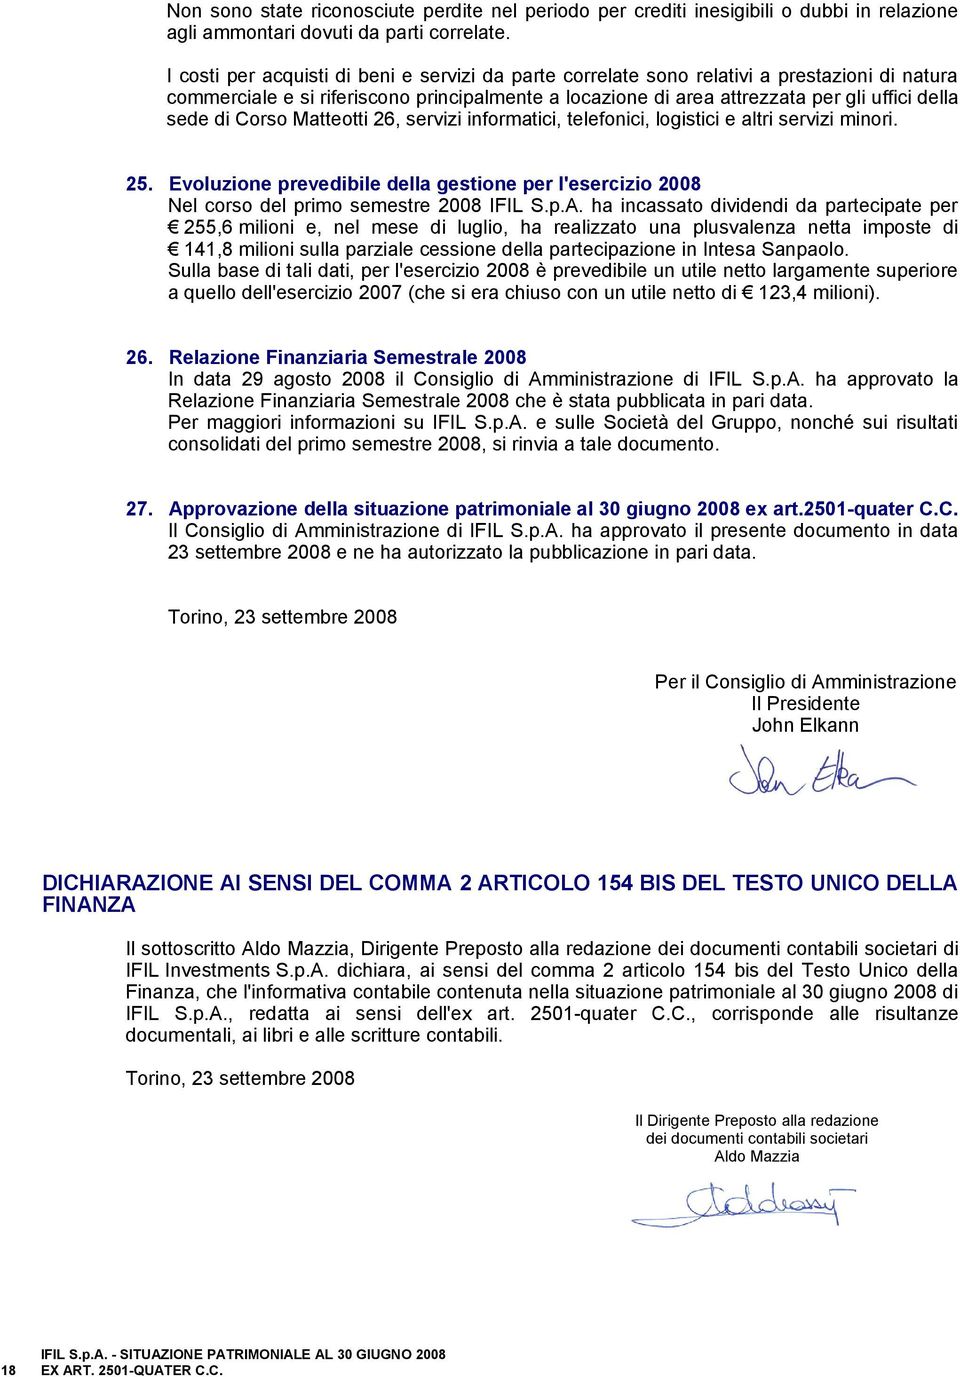 Corso Matteotti 26, servizi informatici, telefonici, logistici e altri servizi minori. 25. Evoluzione prevedibile della gestione per l'esercizio 2008 Nel corso del primo semestre 2008 IFIL S.p.A.